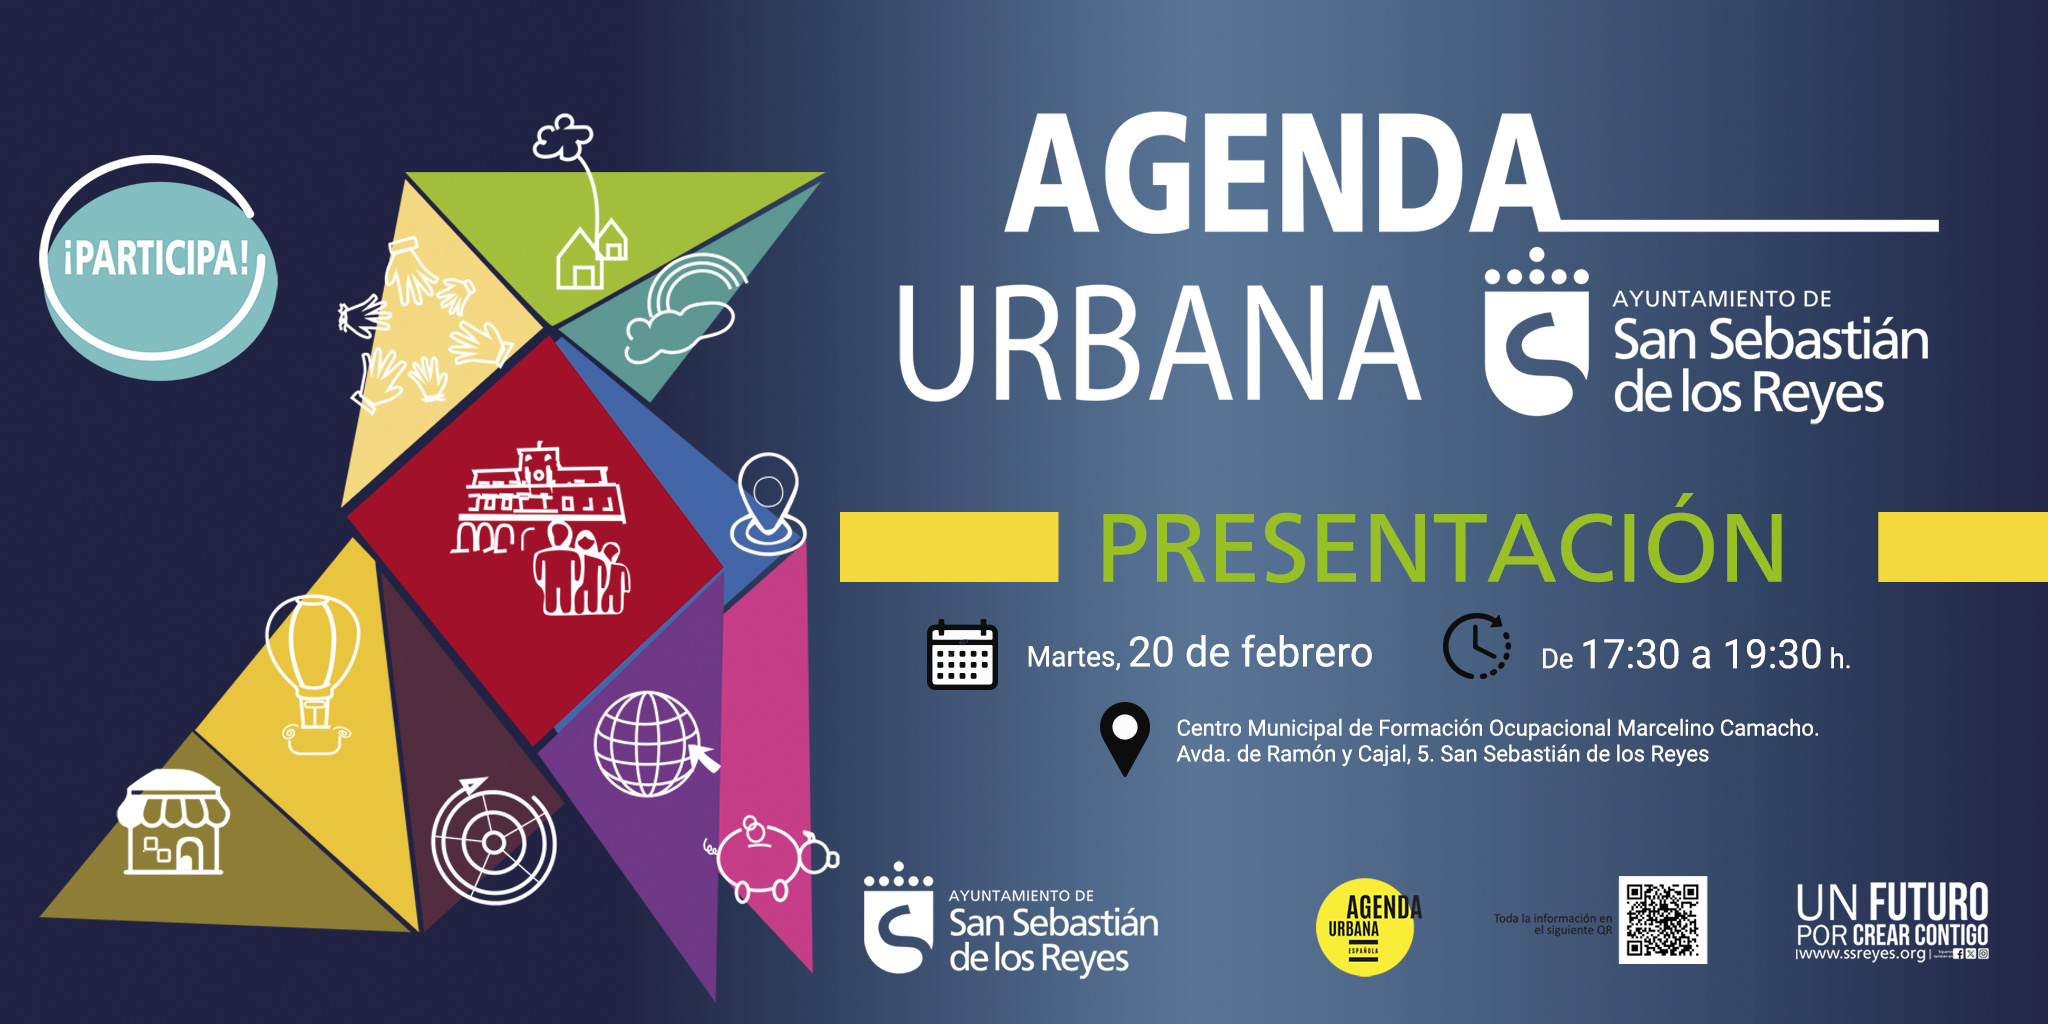 La agenda urbana de San Sebastián de los Reyes lanza su proceso participativo